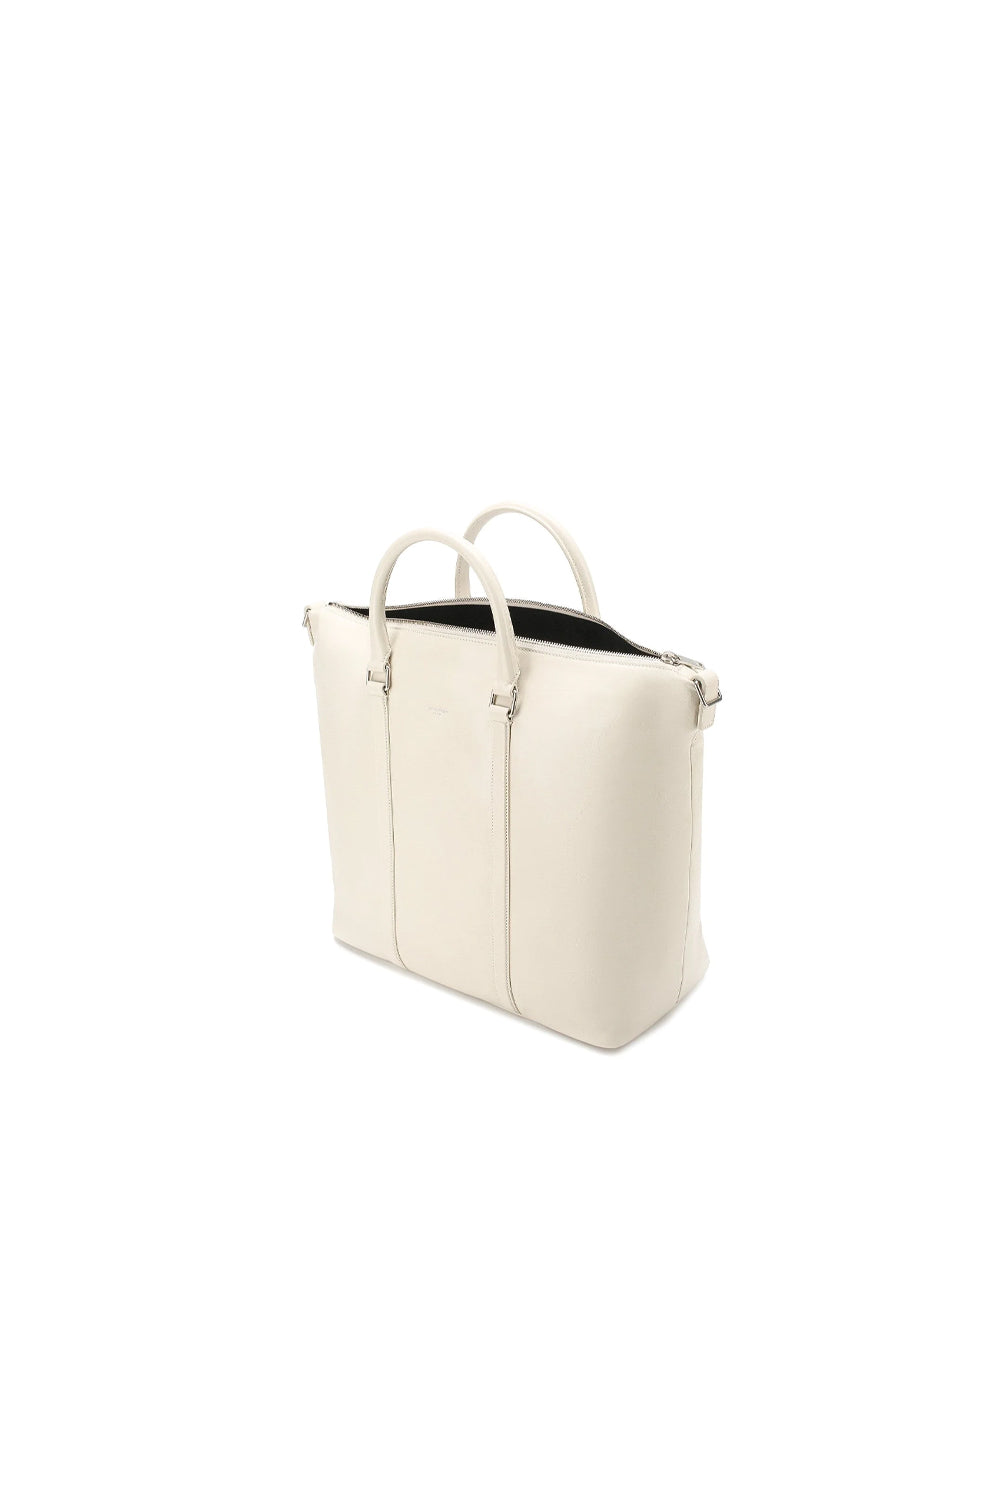 Saint Laurent Supple Ivory Leather Tote Bag